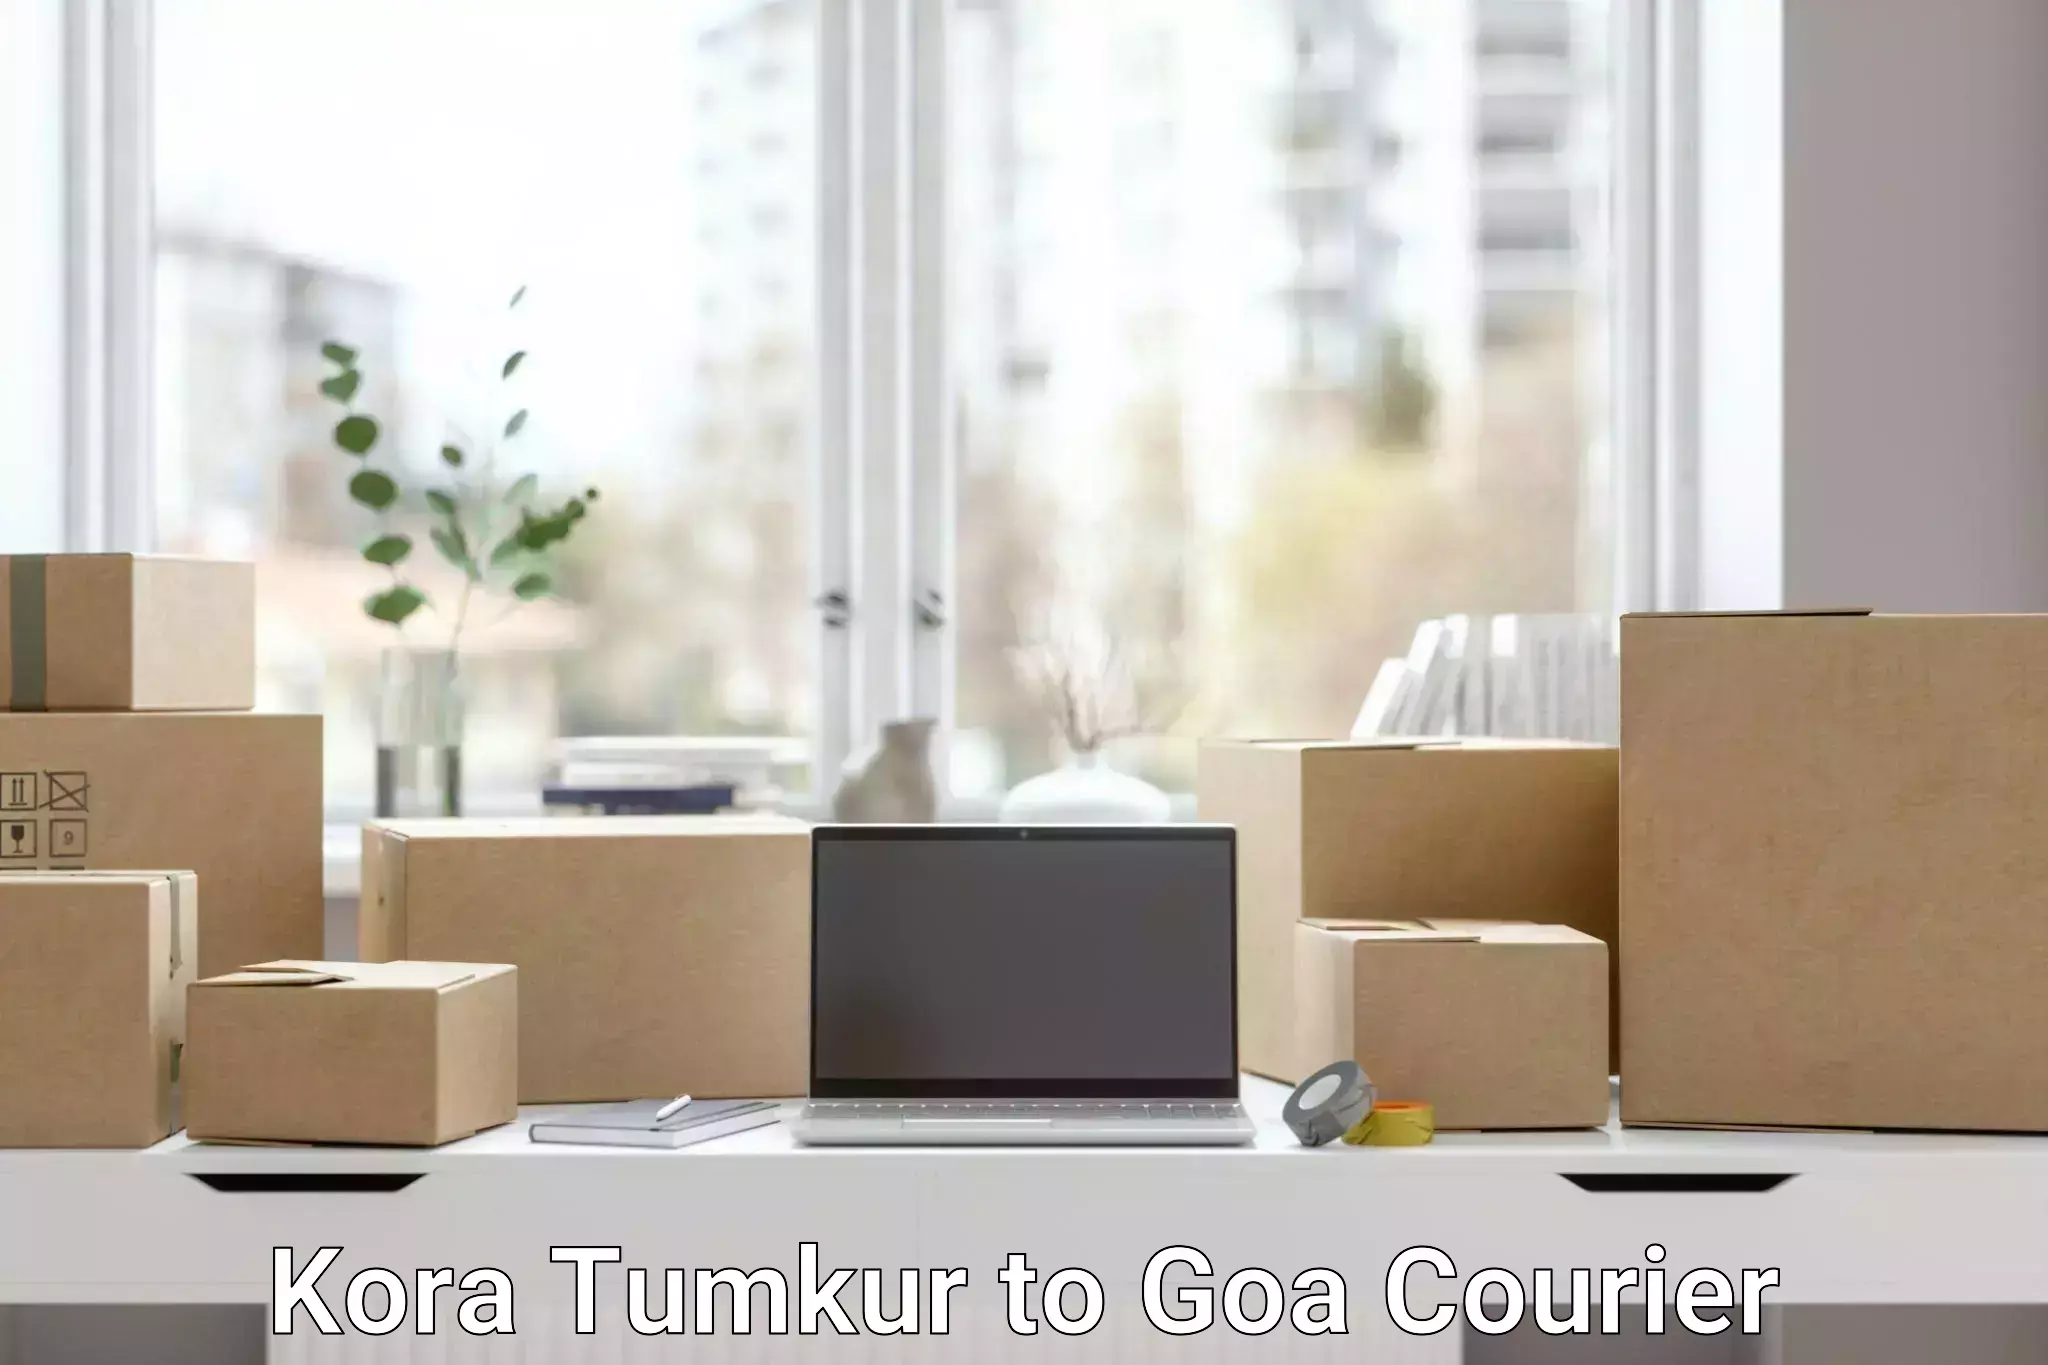 Premium courier solutions Kora Tumkur to Goa